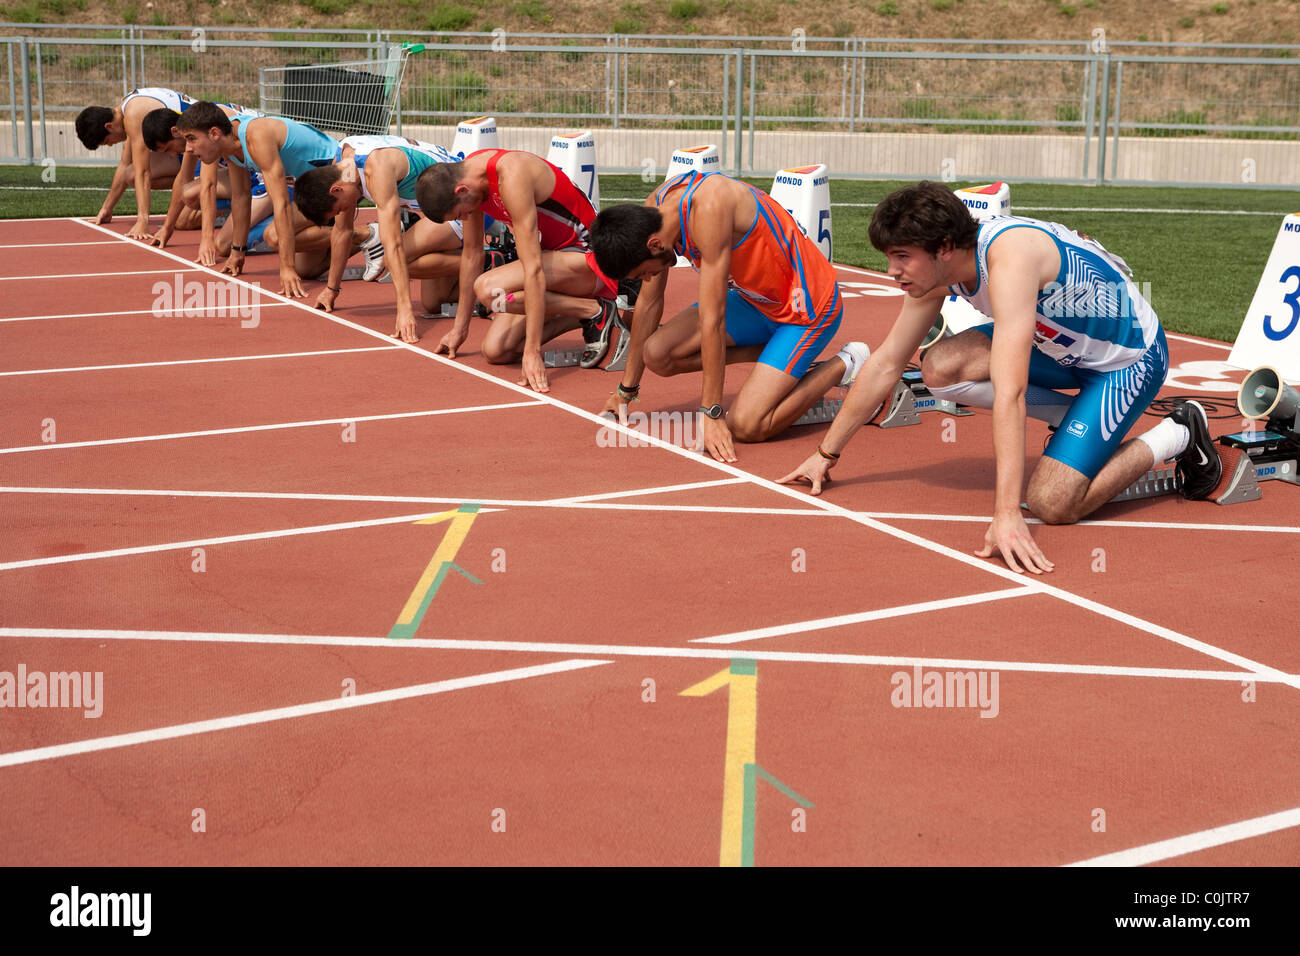 Erwachsenen Athleten am Start Rennen Außenbahn Sport Outdoor-Leichtathletik-Wettbewerb WM Spanien, 3. Juli 4. 2010-Mallorca Stockfoto